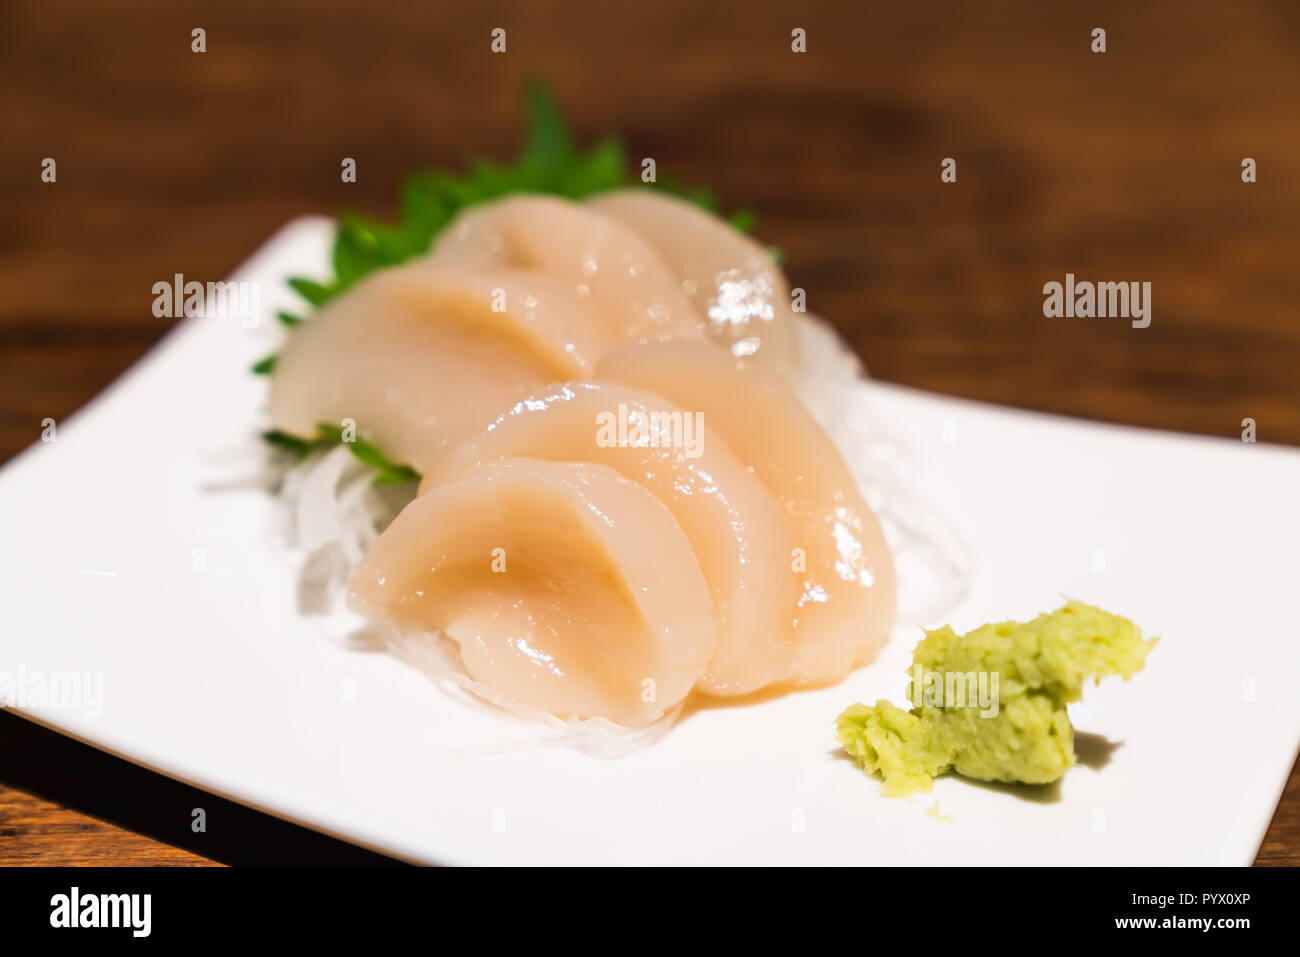 Raw jakobsmuschel Sashimi oder hotate Sashimi mit Wasabi auf Teller serviert, Japanische berühmte leckere rohe Meeresfrüchte essen. Asiatische Lebensmittel, Japan traditionelles Menü Stockfoto